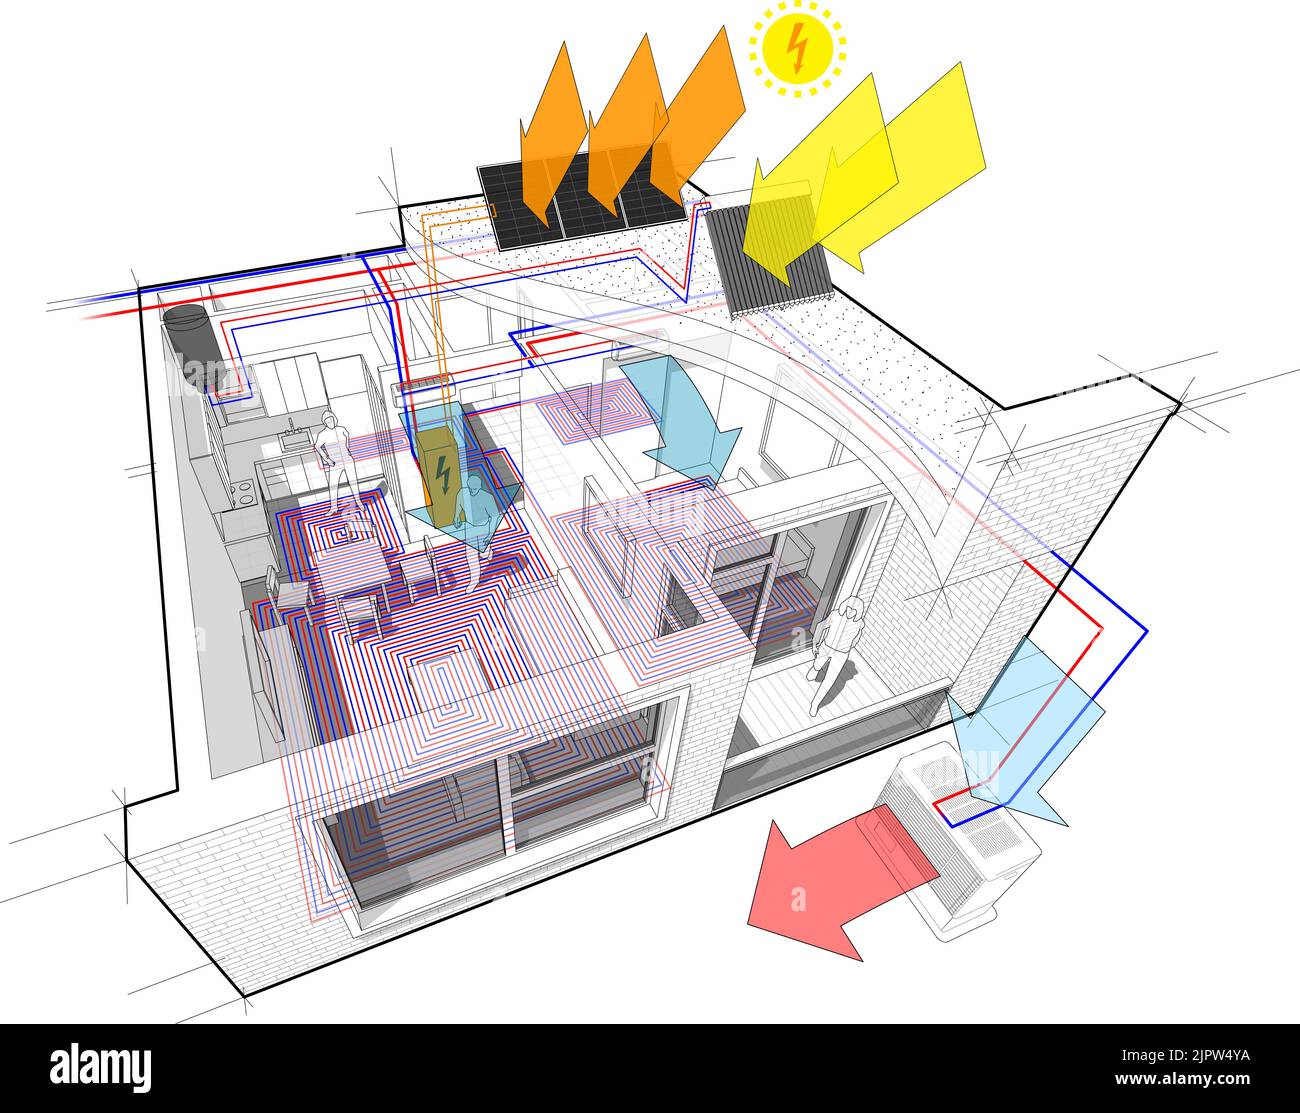 Apartment-Diagramm mit Fußbodenheizung und Photovoltaik und Sonnenkollektoren und Klimaanlage Stockfoto